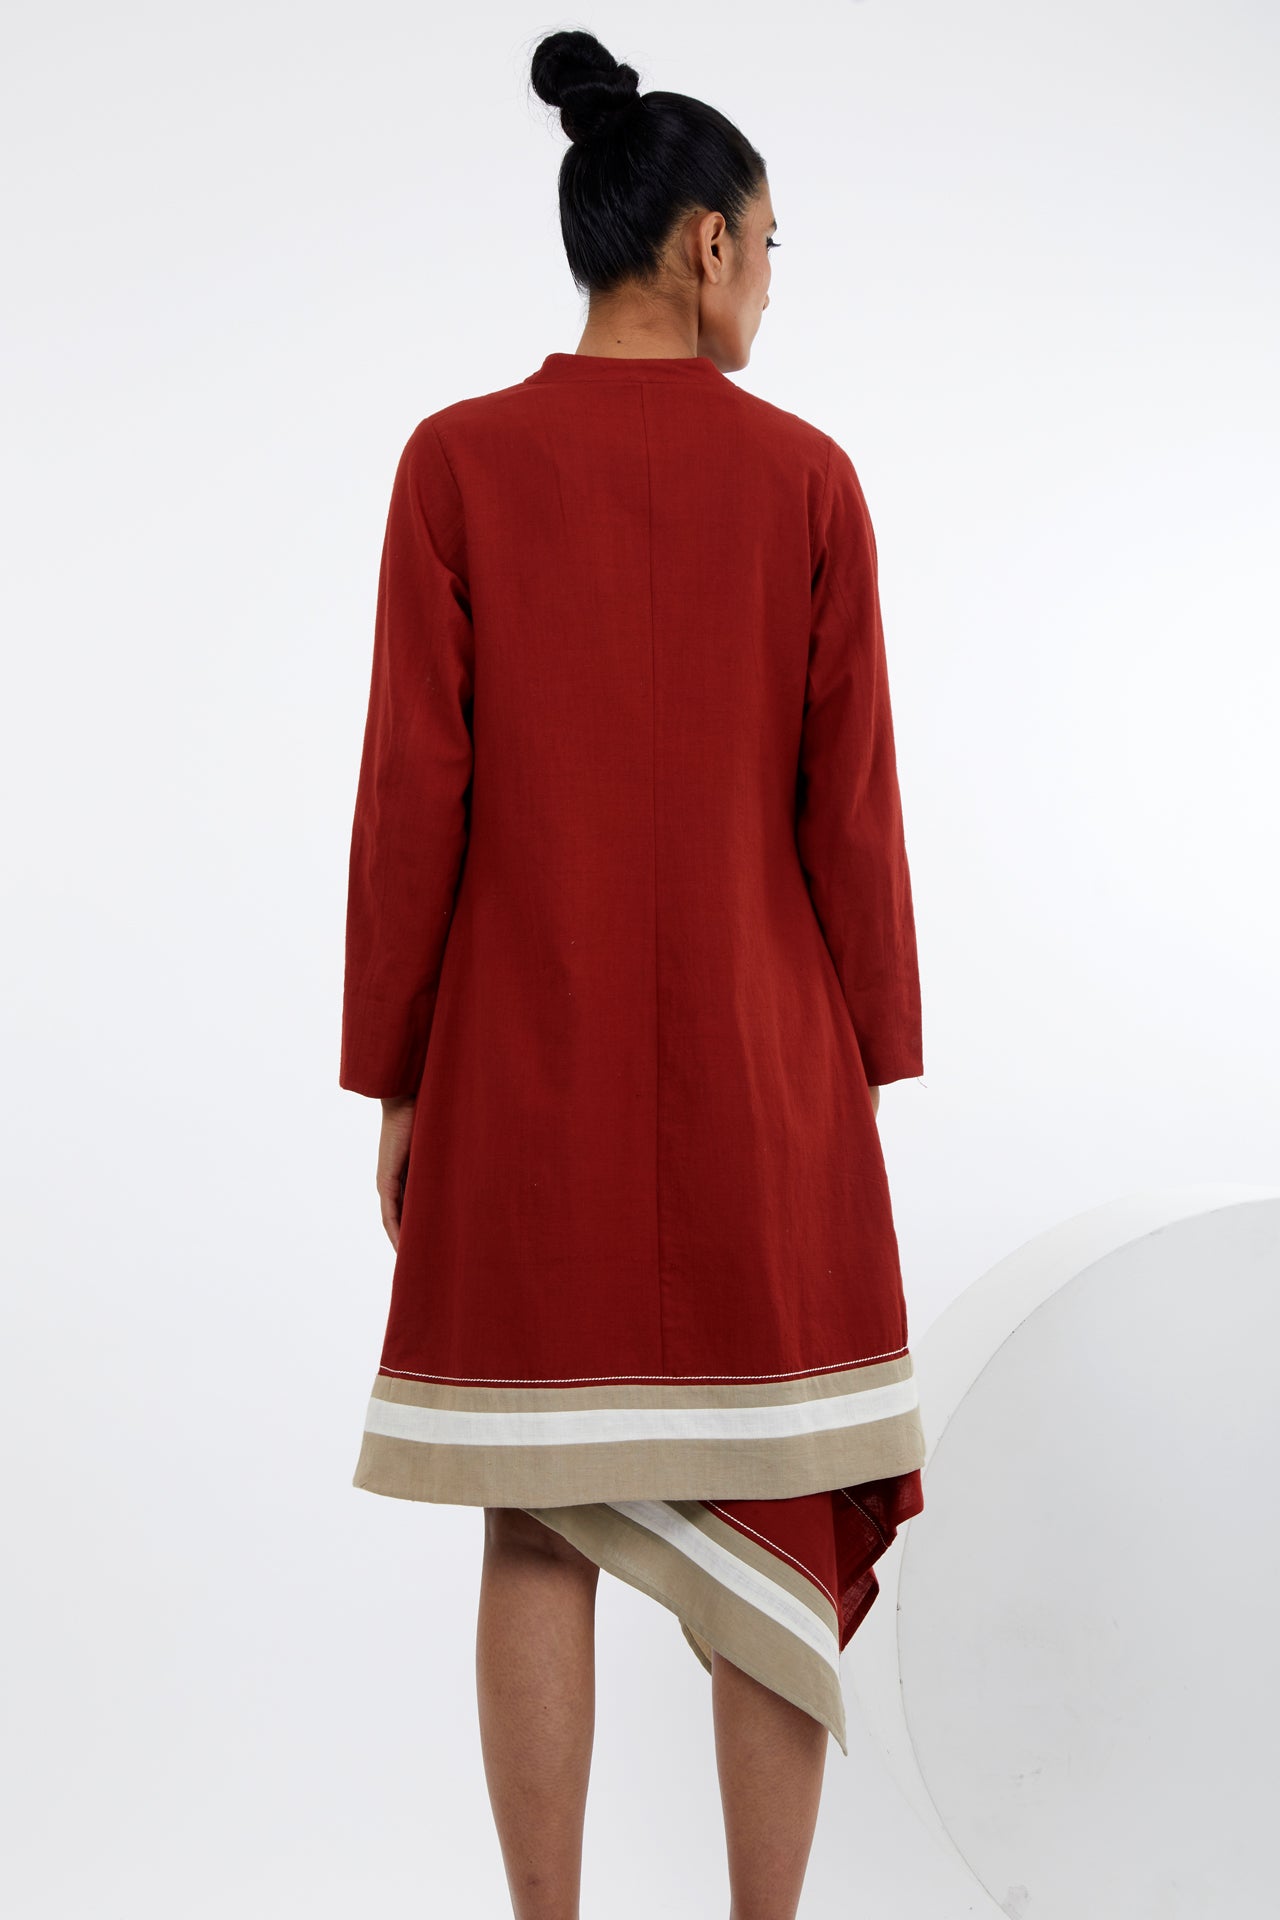 Beni - Madder Red Blazer Skirt Set of 3